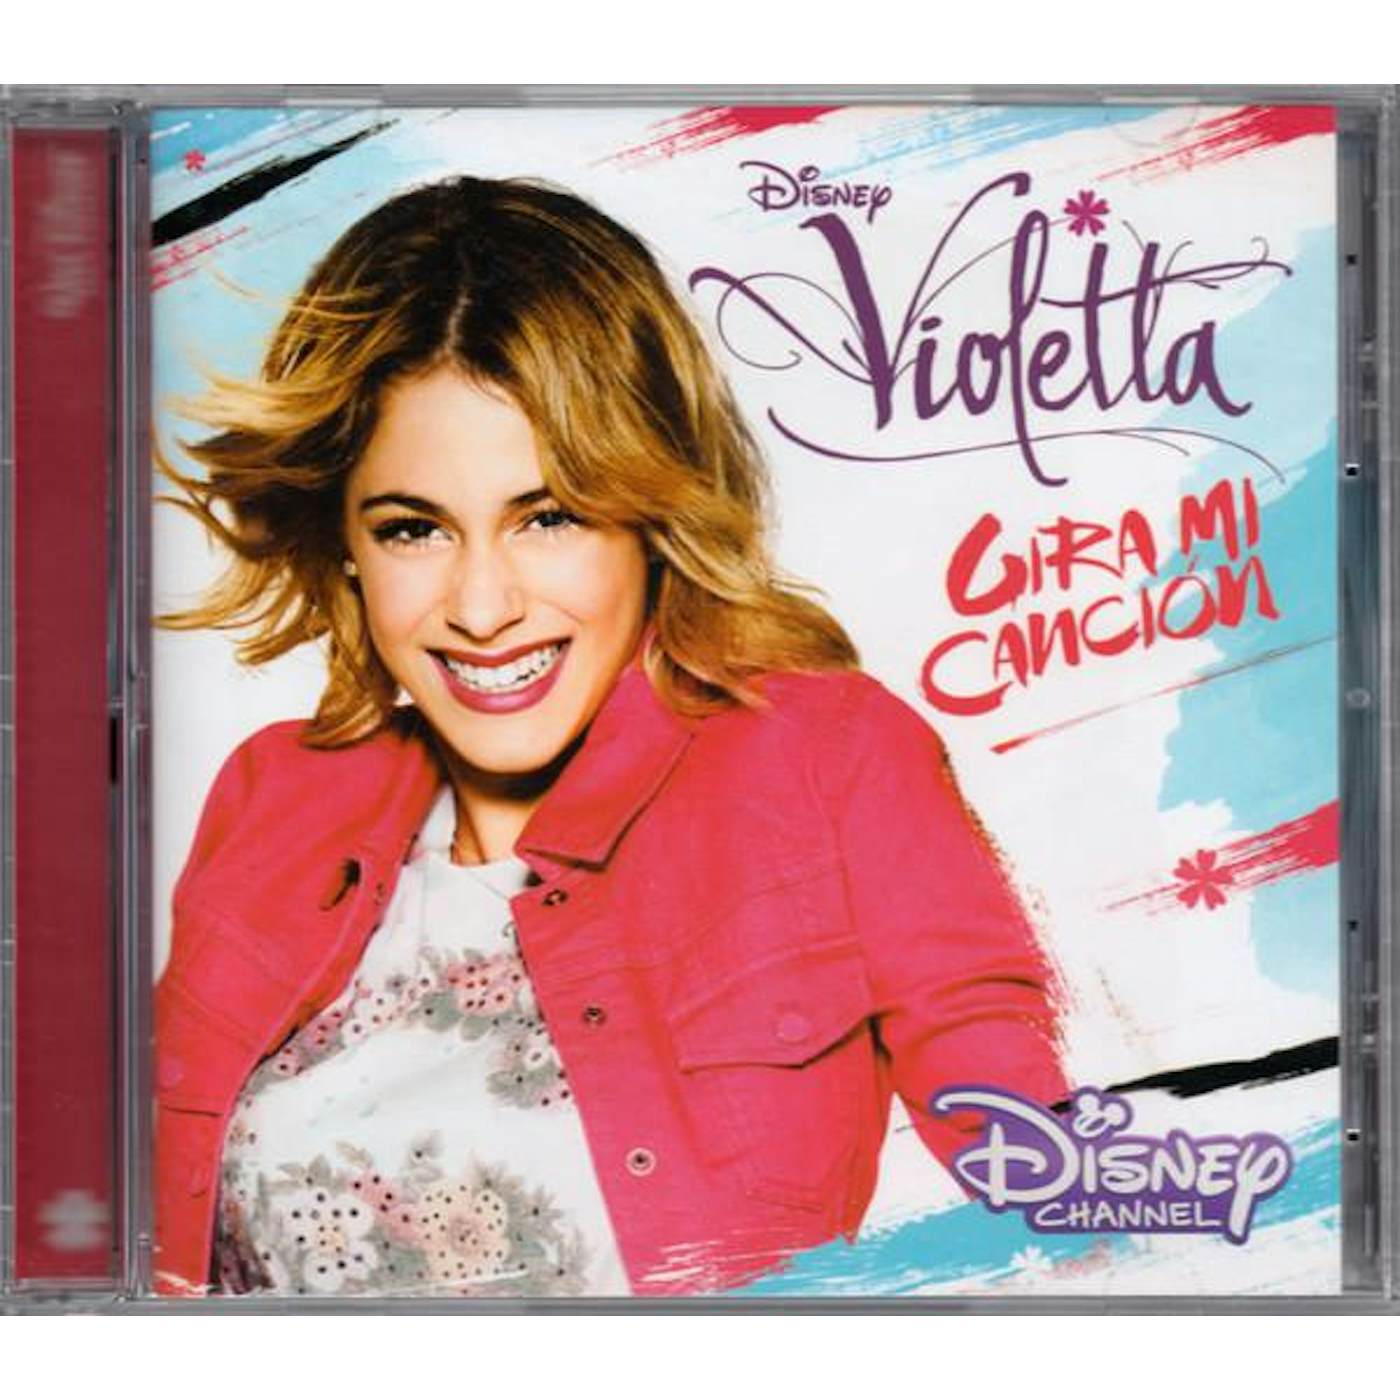 Violetta GIRA MI CANCION CD